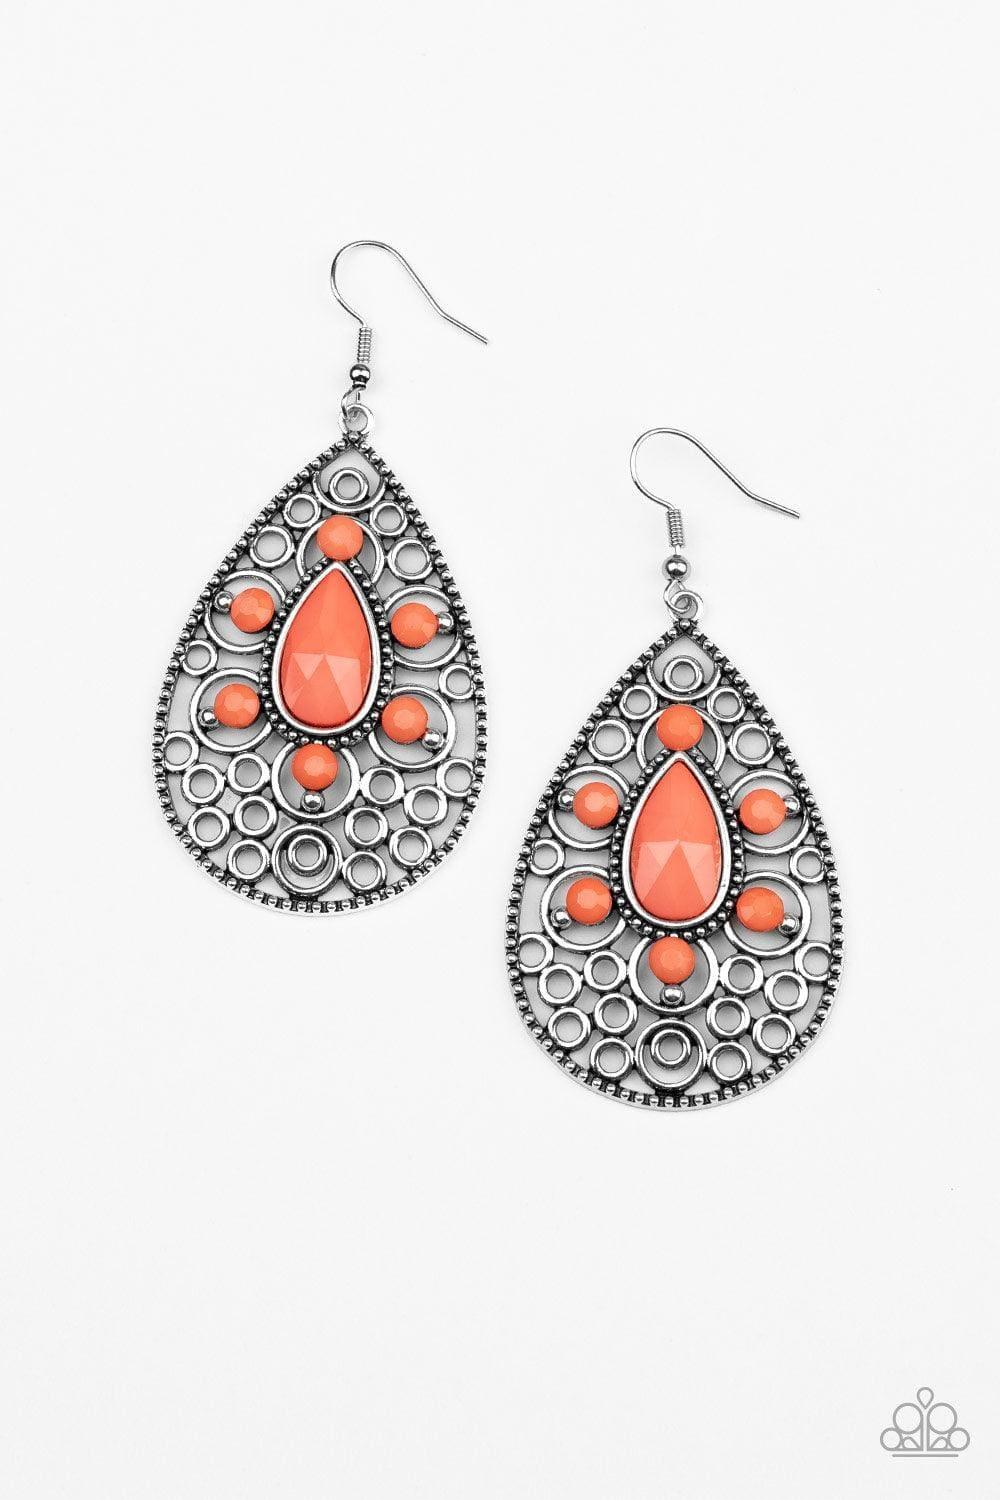 Paparazzi Accessories - Modern Garden - Orange (coral) Earrings - Bling by JessieK